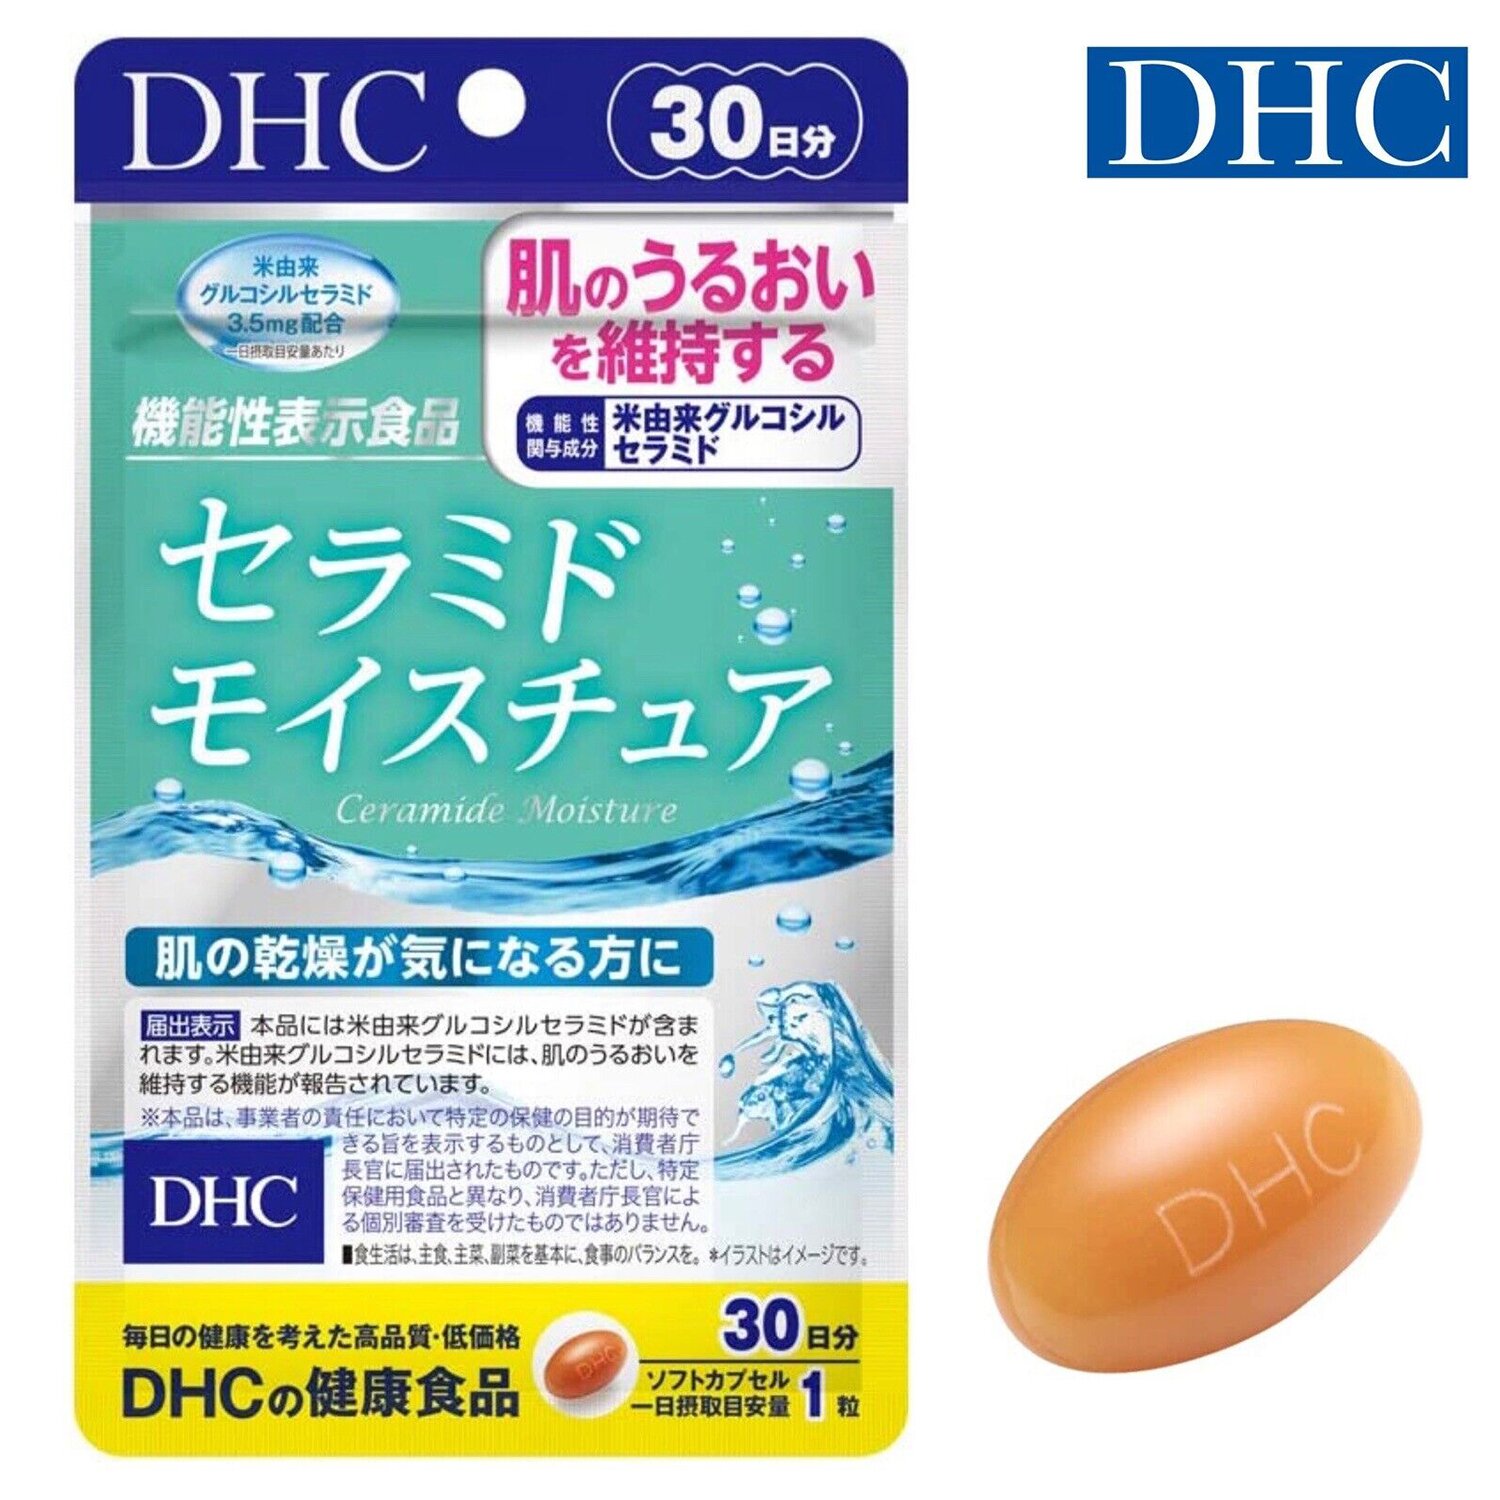 디에이치씨 DHC DHC Ceramide Moisture 30 capsules